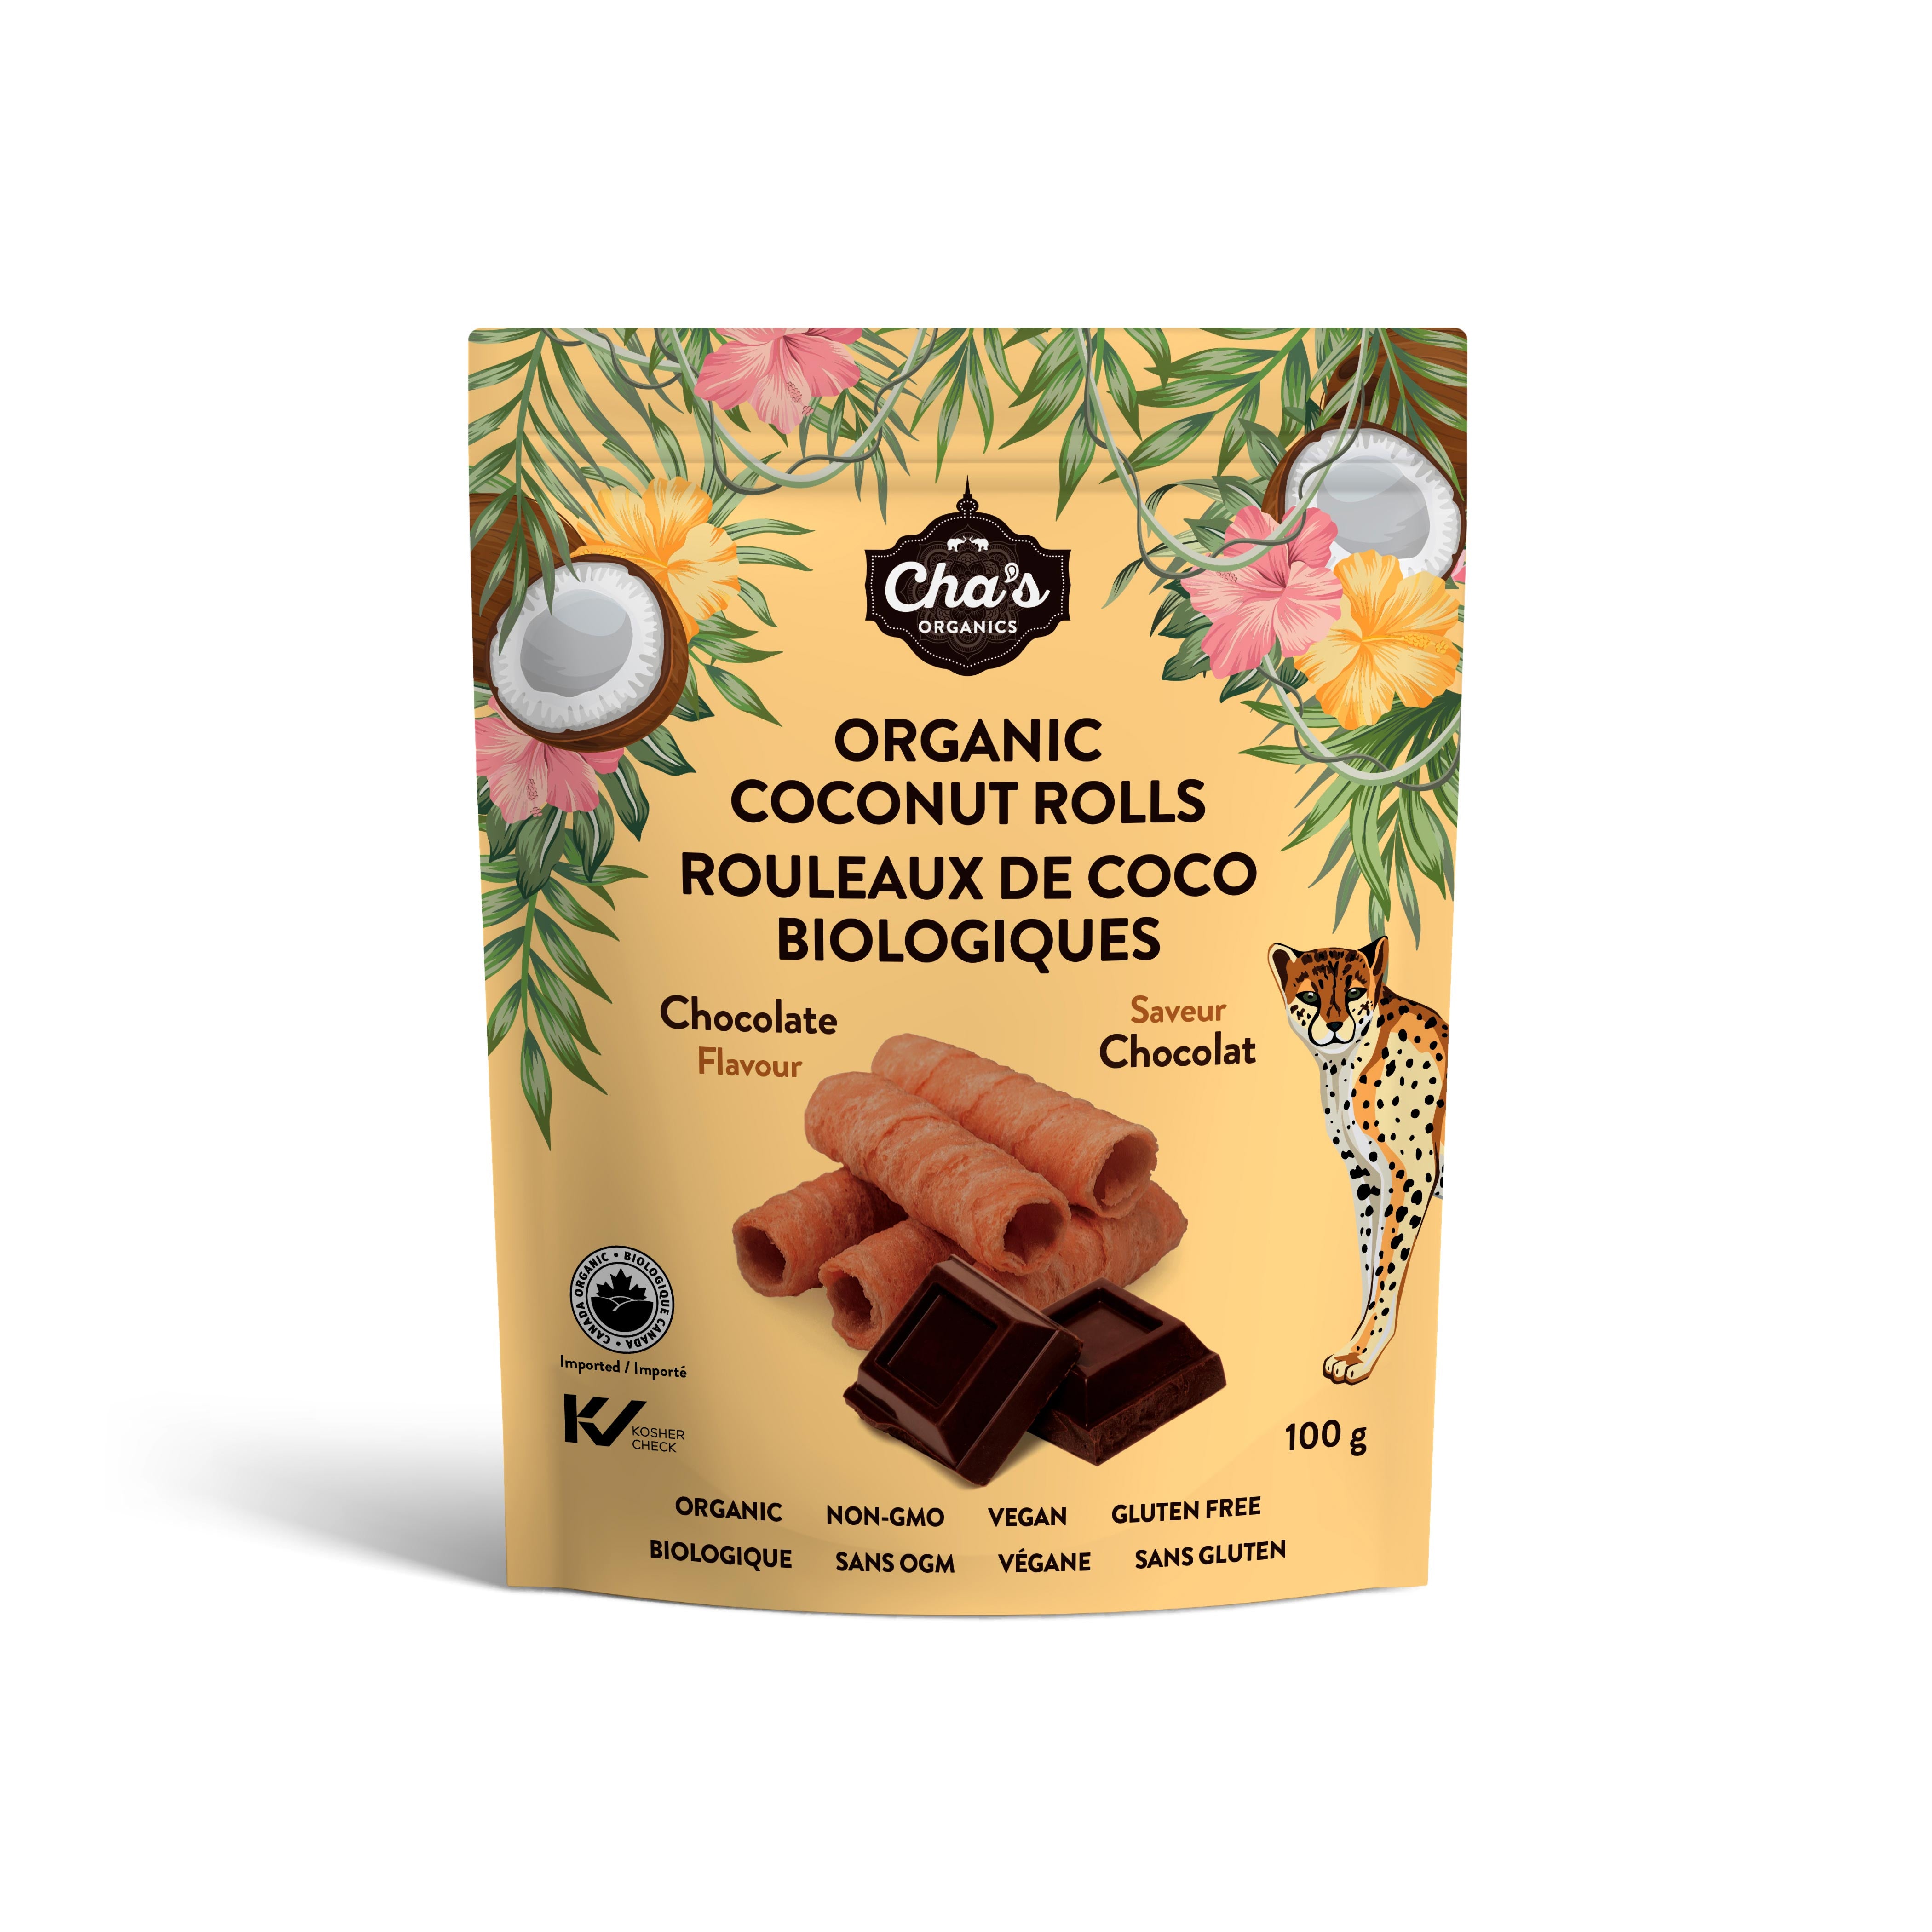 Rouleaux de coco saveur chocolat – Cha's Organics